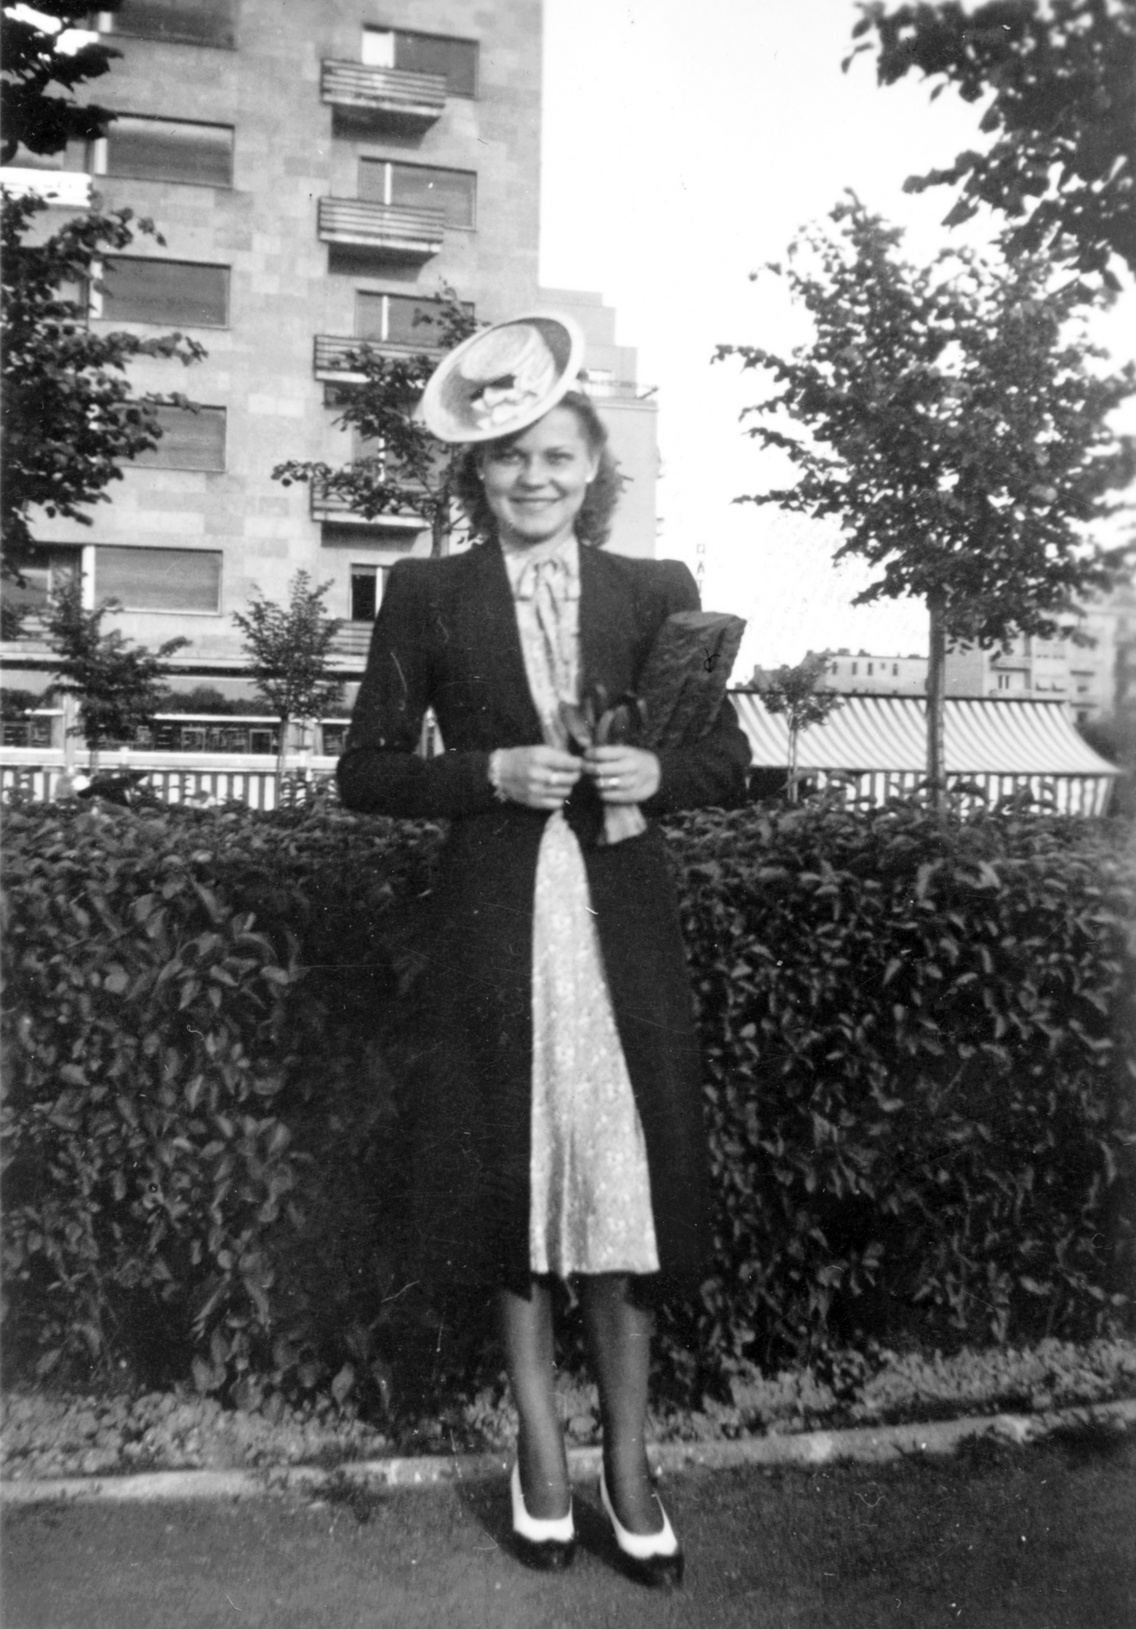 Szent István park, háttérben a 27. sz. ház Dunára néző frontja, 1938